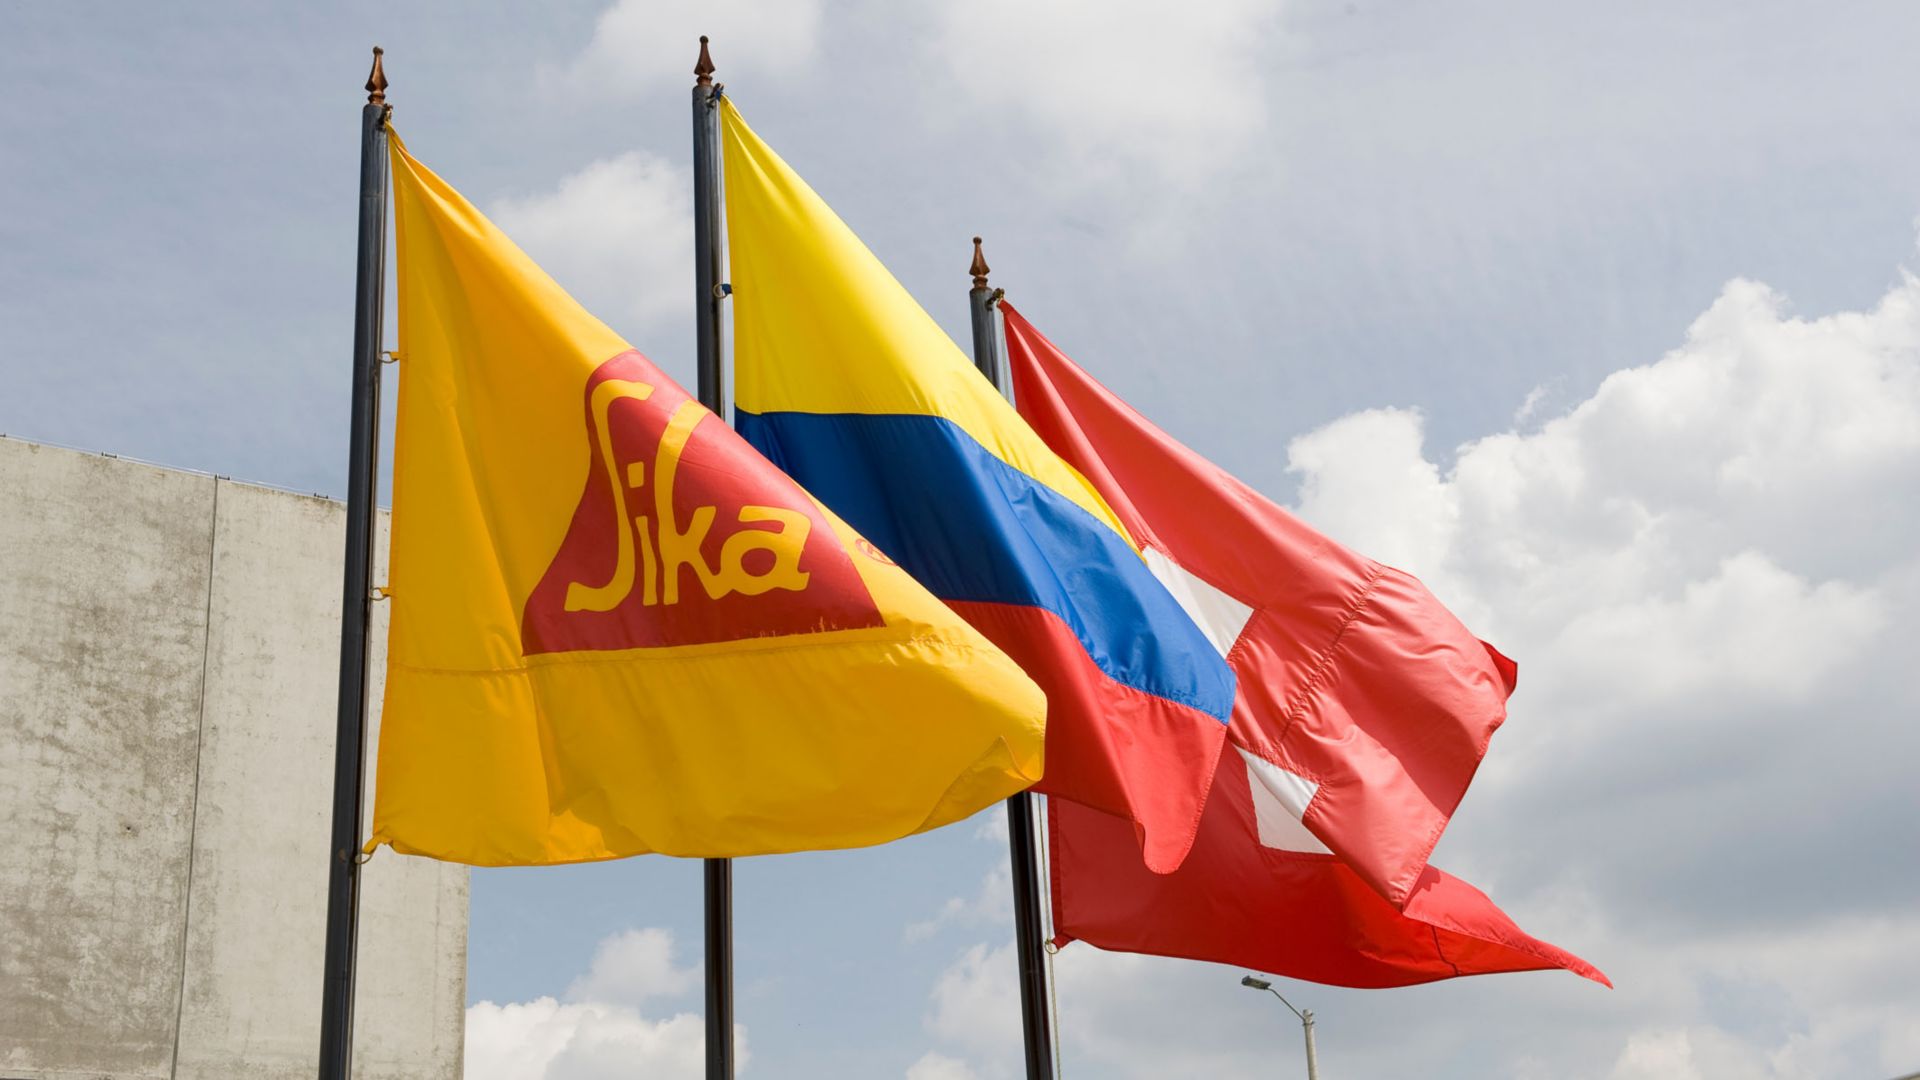 Bandera de Sika, Colombia y Suiza